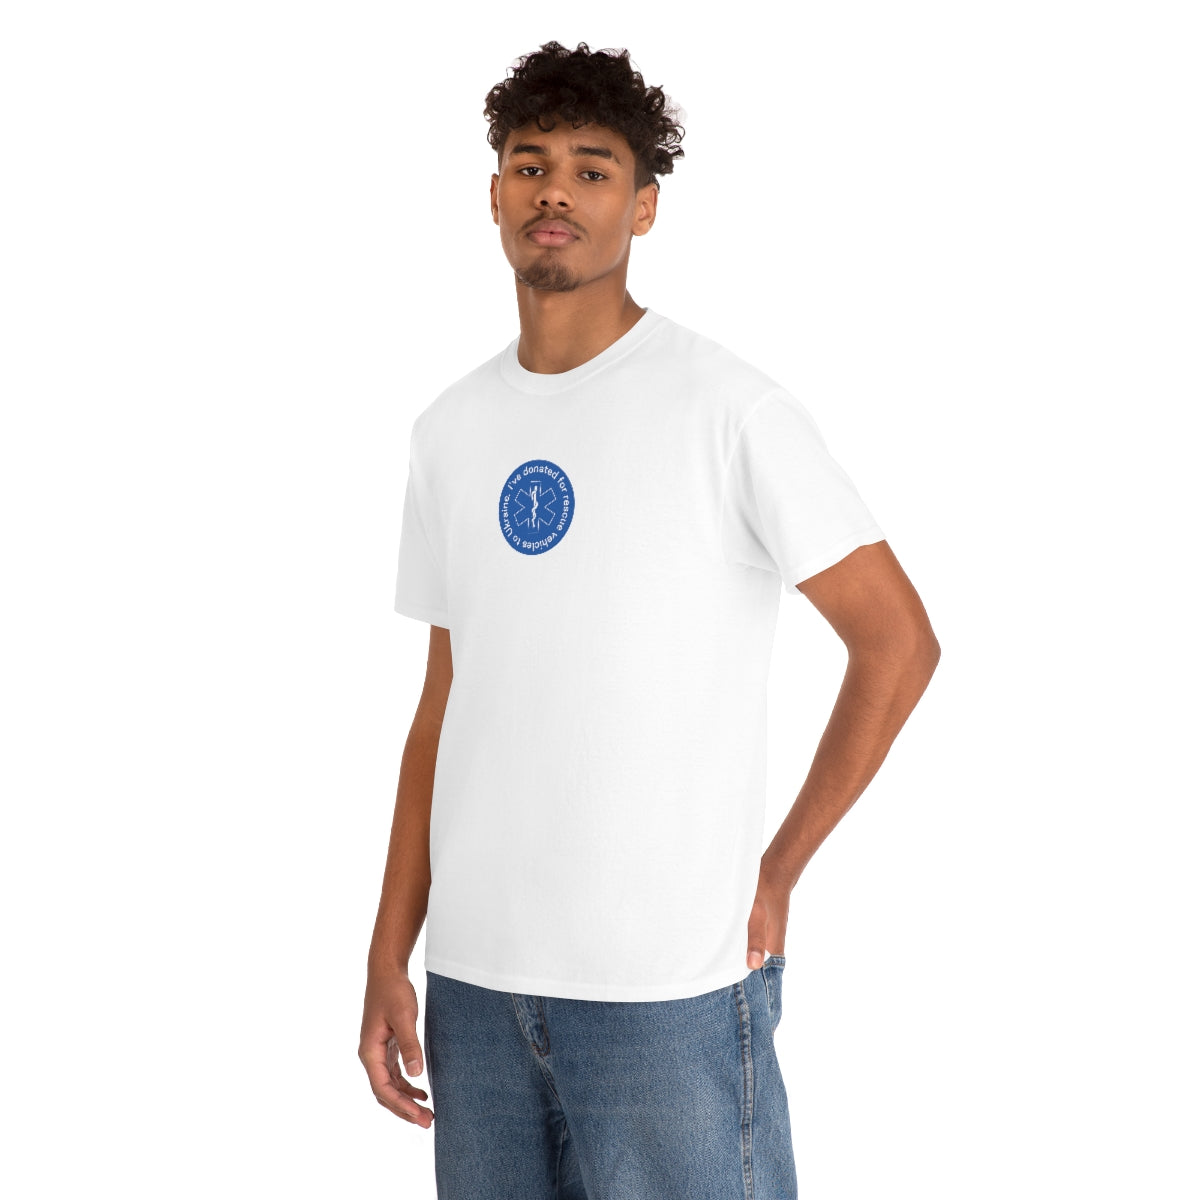 Donné minimaliste - T-shirt unisexe